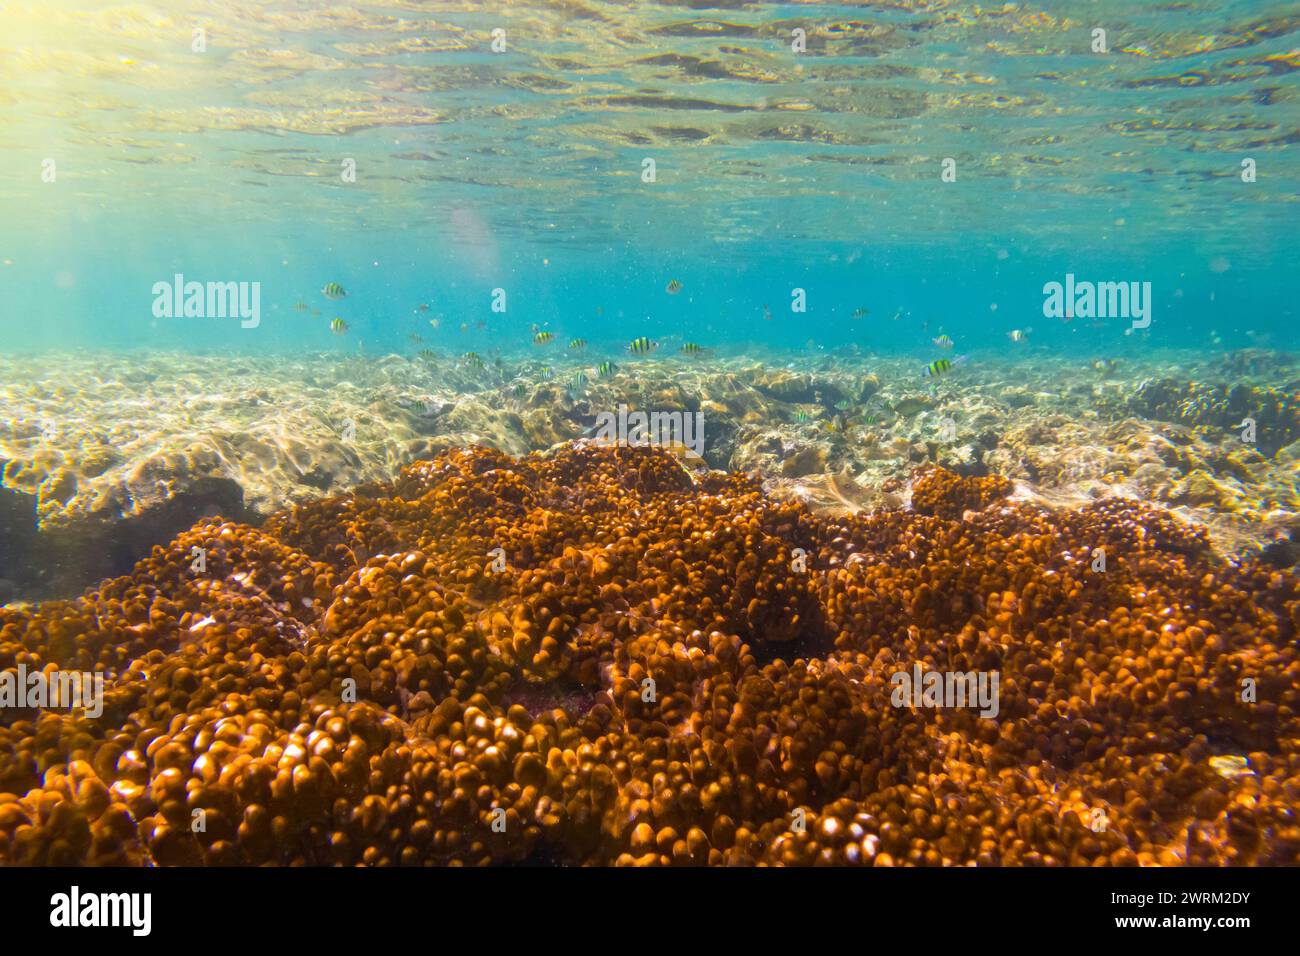 Vari pesci tropicali abudefduf si nutrono nelle calde acque di unser dell'oceano tra i coralli. Scuola di pappagalli che riproducono e nutrono acque poco profonde, shoa Foto Stock